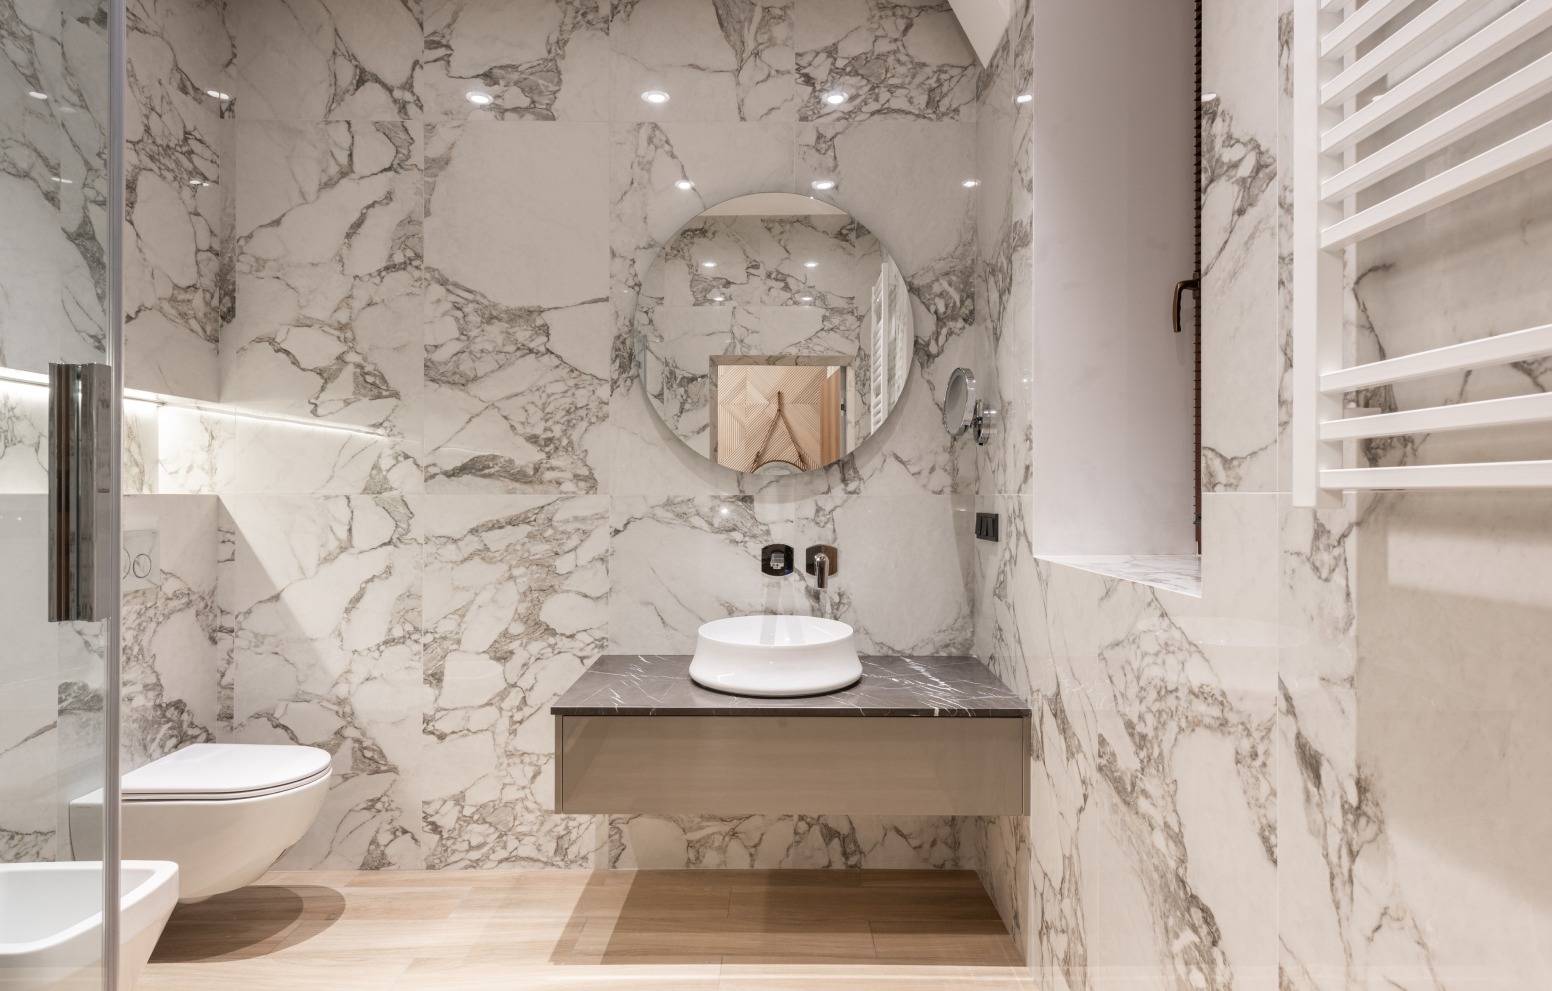 Kaunis wc, jossa peili, lavuaari sekä paljon marmoripintoja.